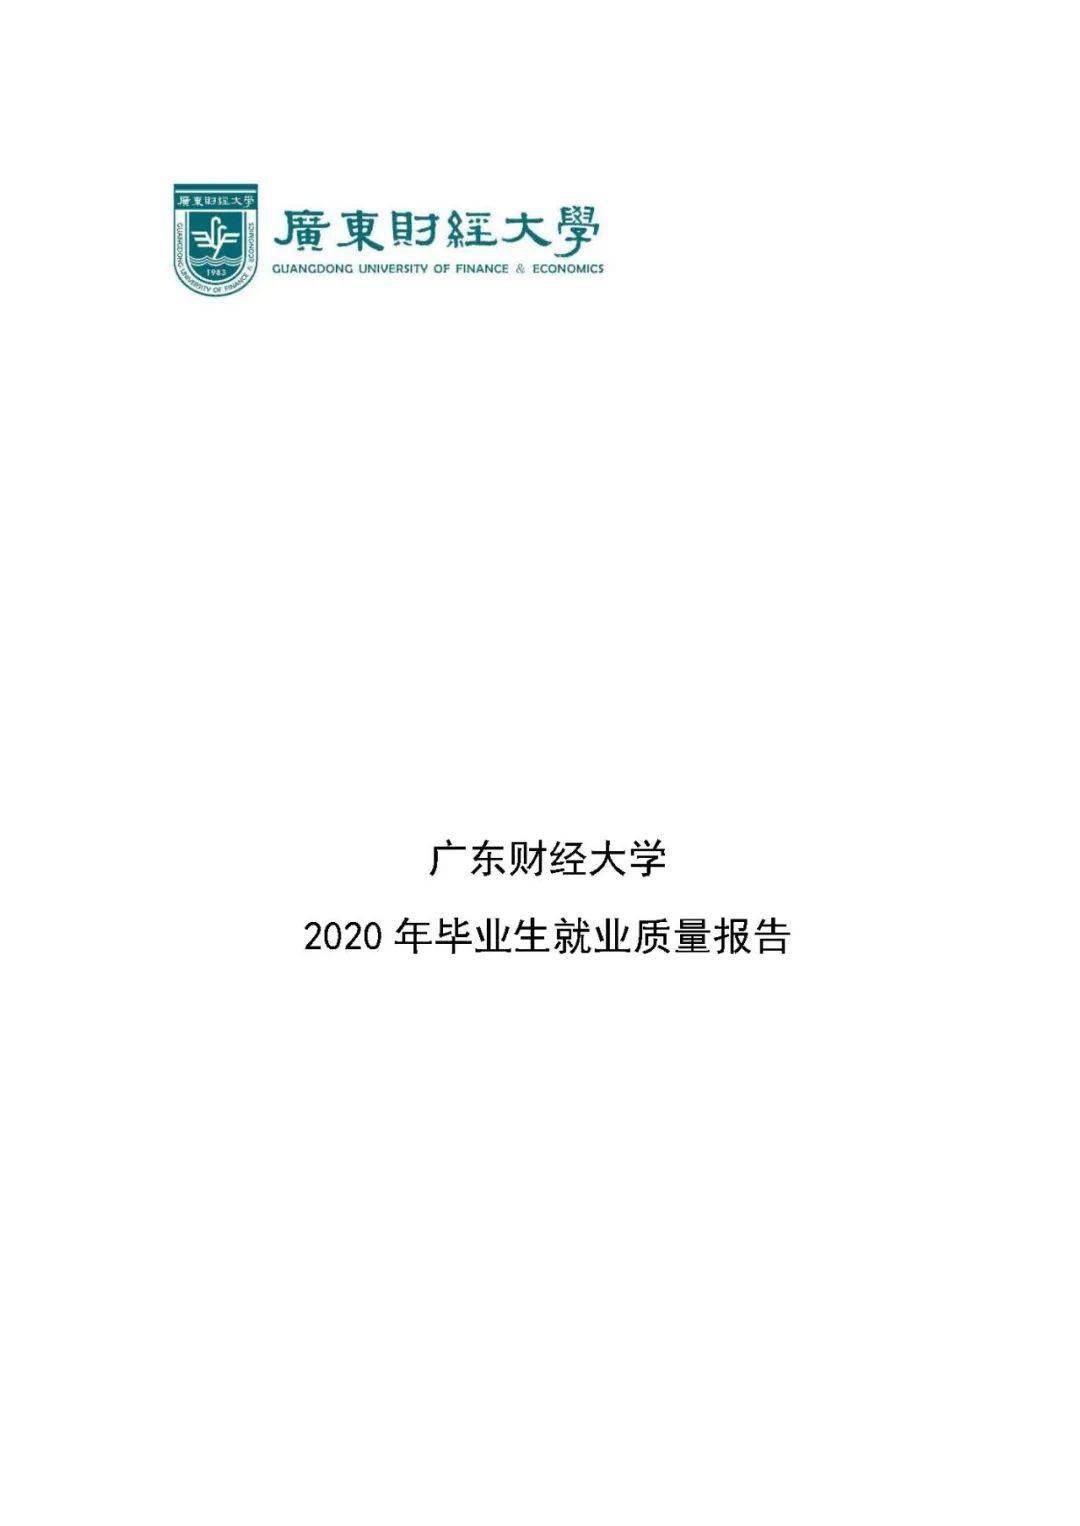 广东财经大学2021年院校专业分数及就业质量报告!